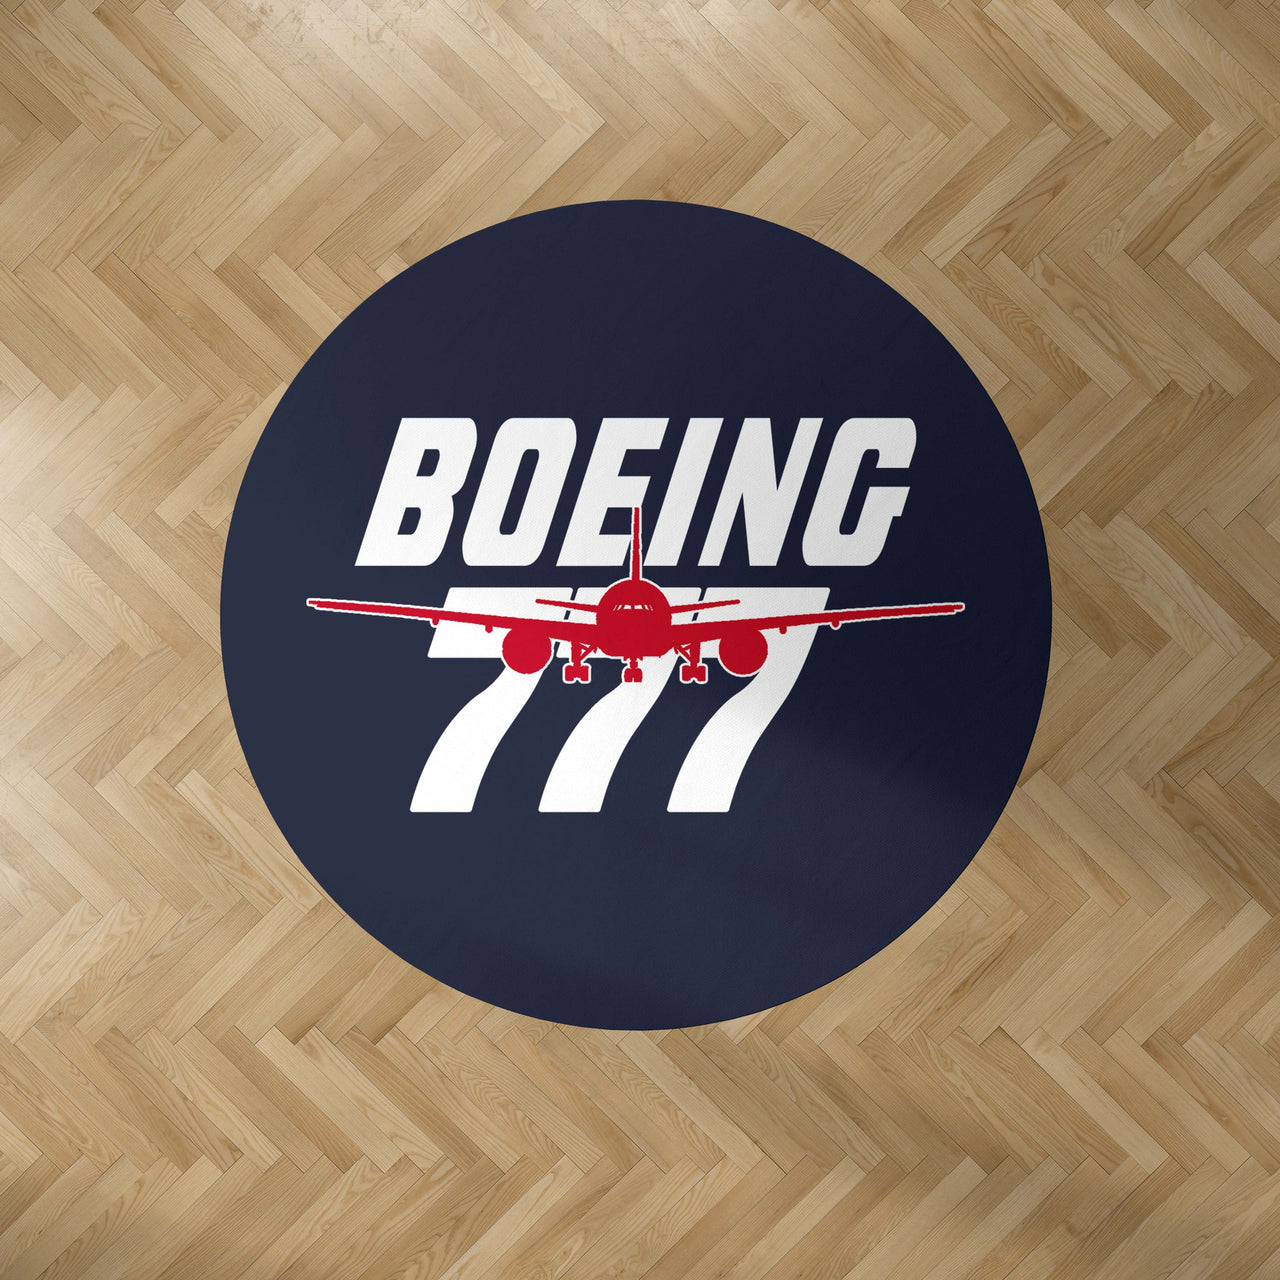 Amazing Boeing 777 Designed Carpet & Floor Mats (Round)